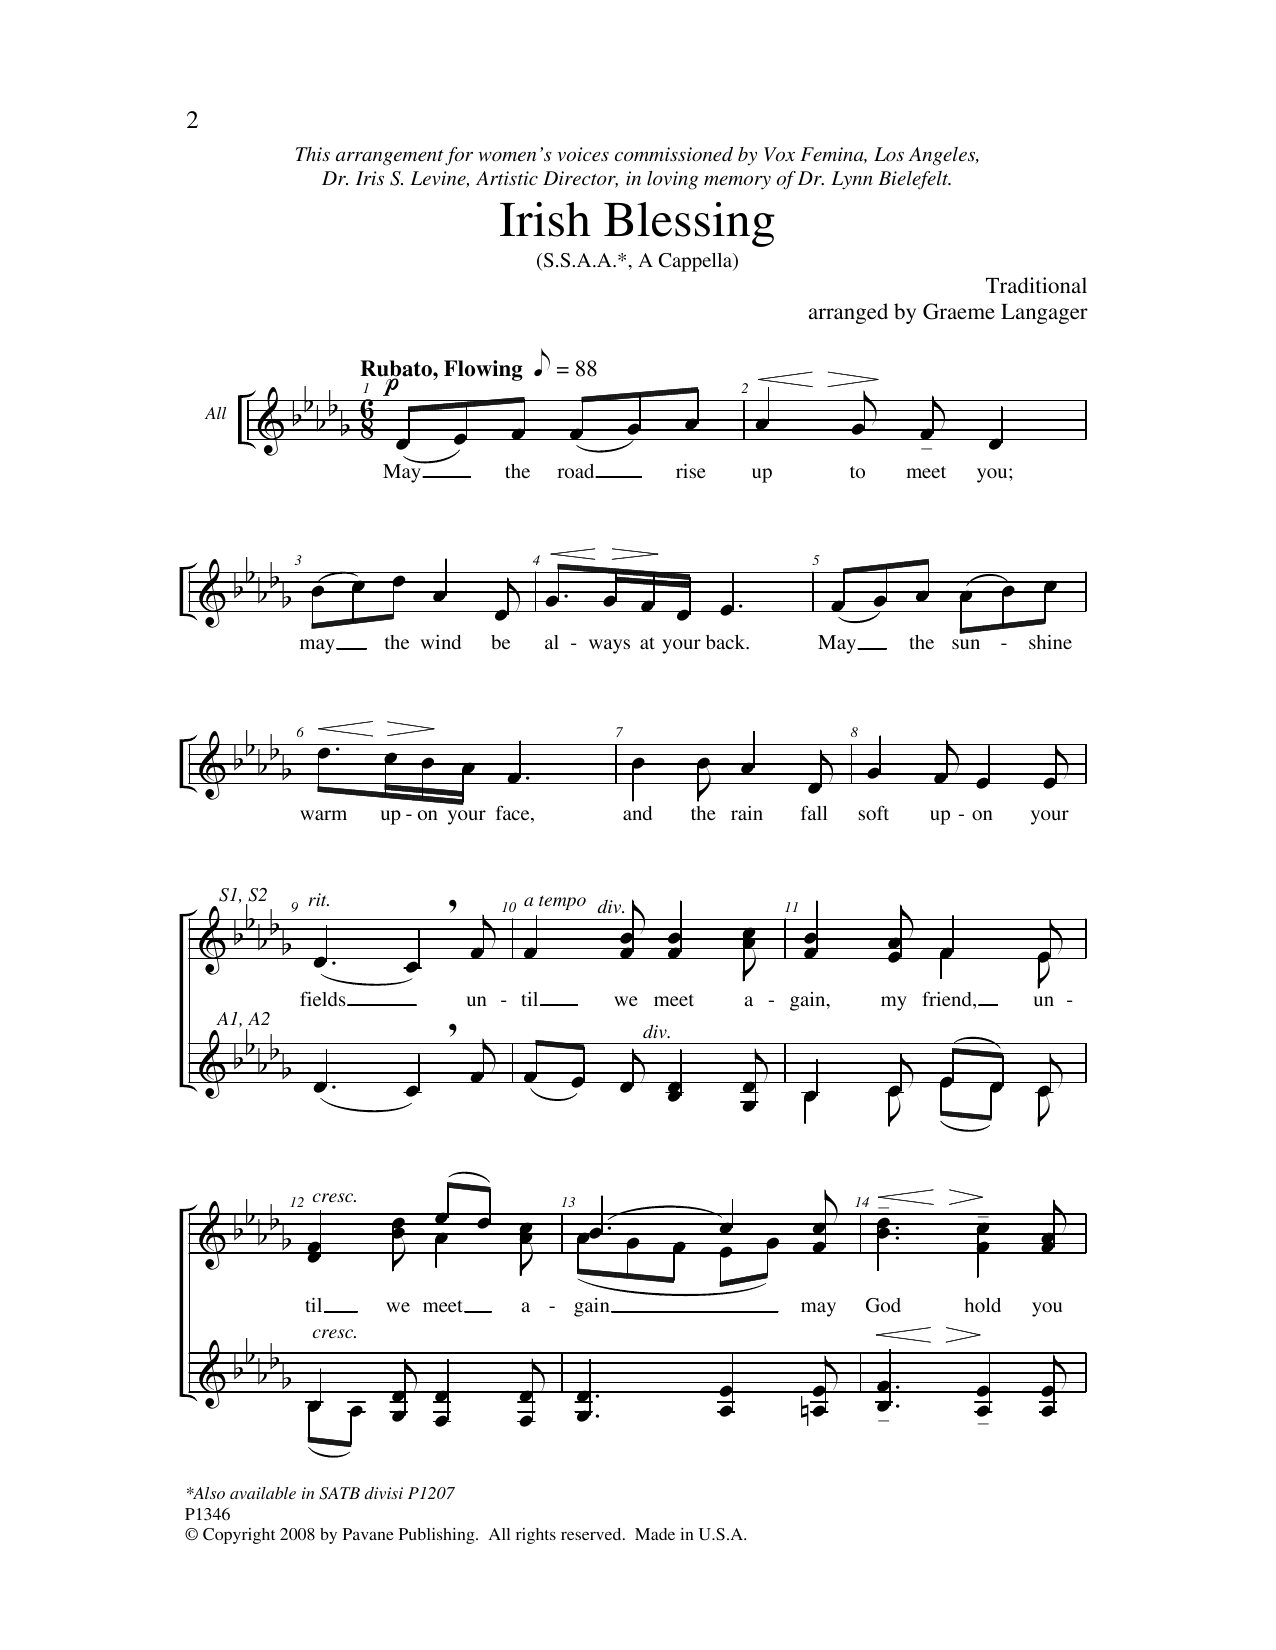 Graeme Langager Irish Blessing Sheet Music Notes & Chords for SSA Choir - Download or Print PDF